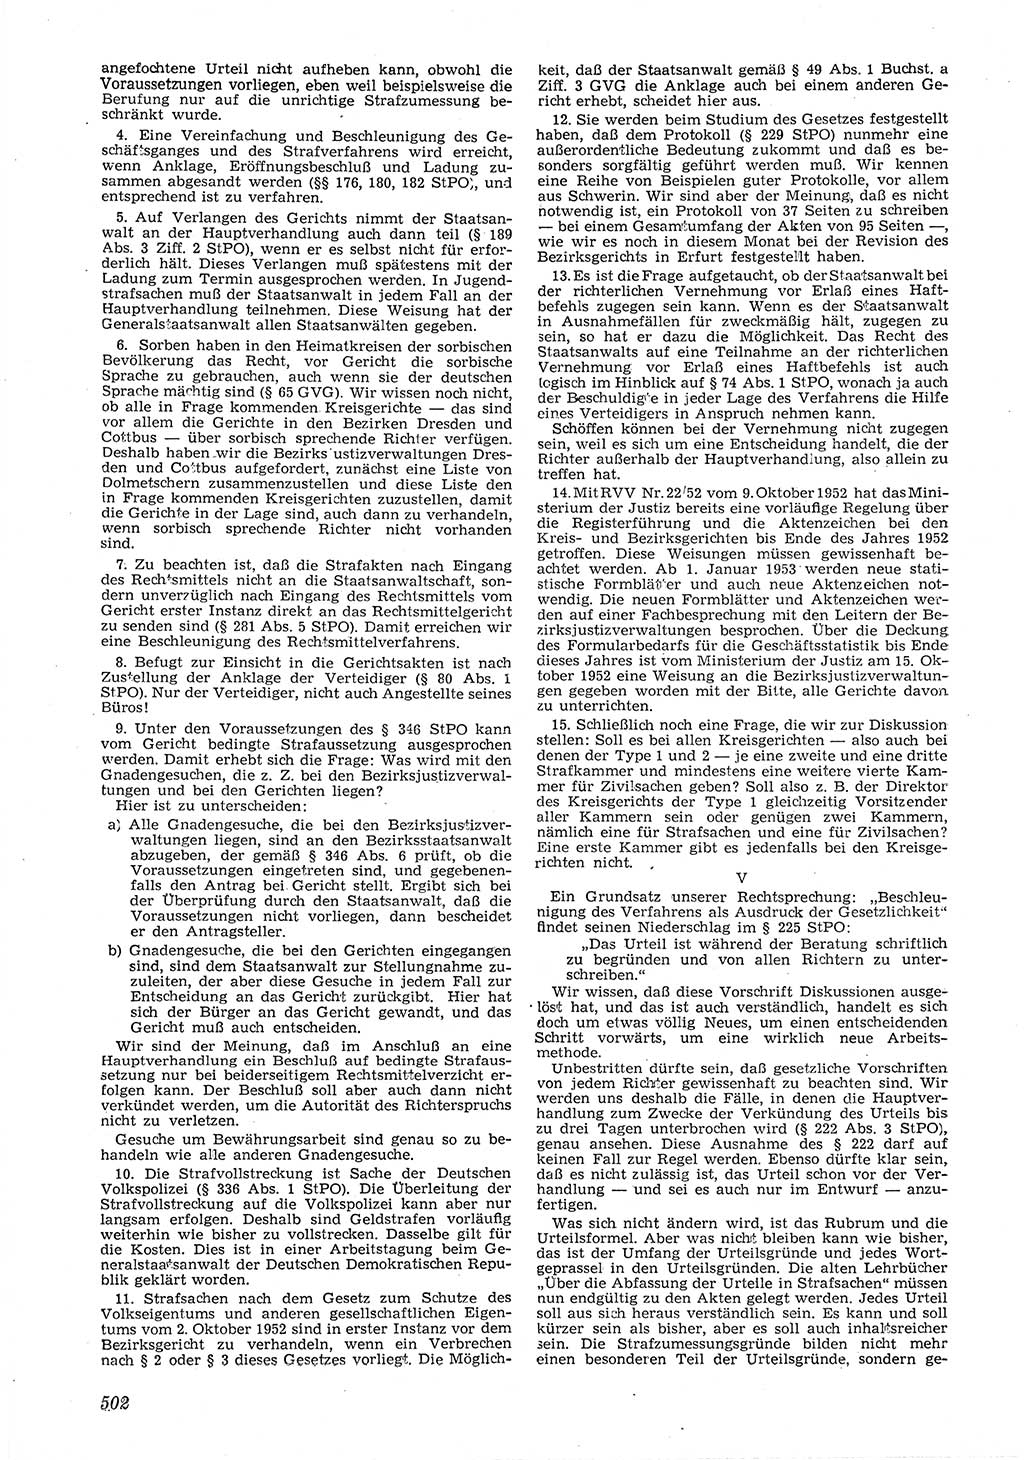 Neue Justiz (NJ), Zeitschrift für Recht und Rechtswissenschaft [Deutsche Demokratische Republik (DDR)], 6. Jahrgang 1952, Seite 502 (NJ DDR 1952, S. 502)